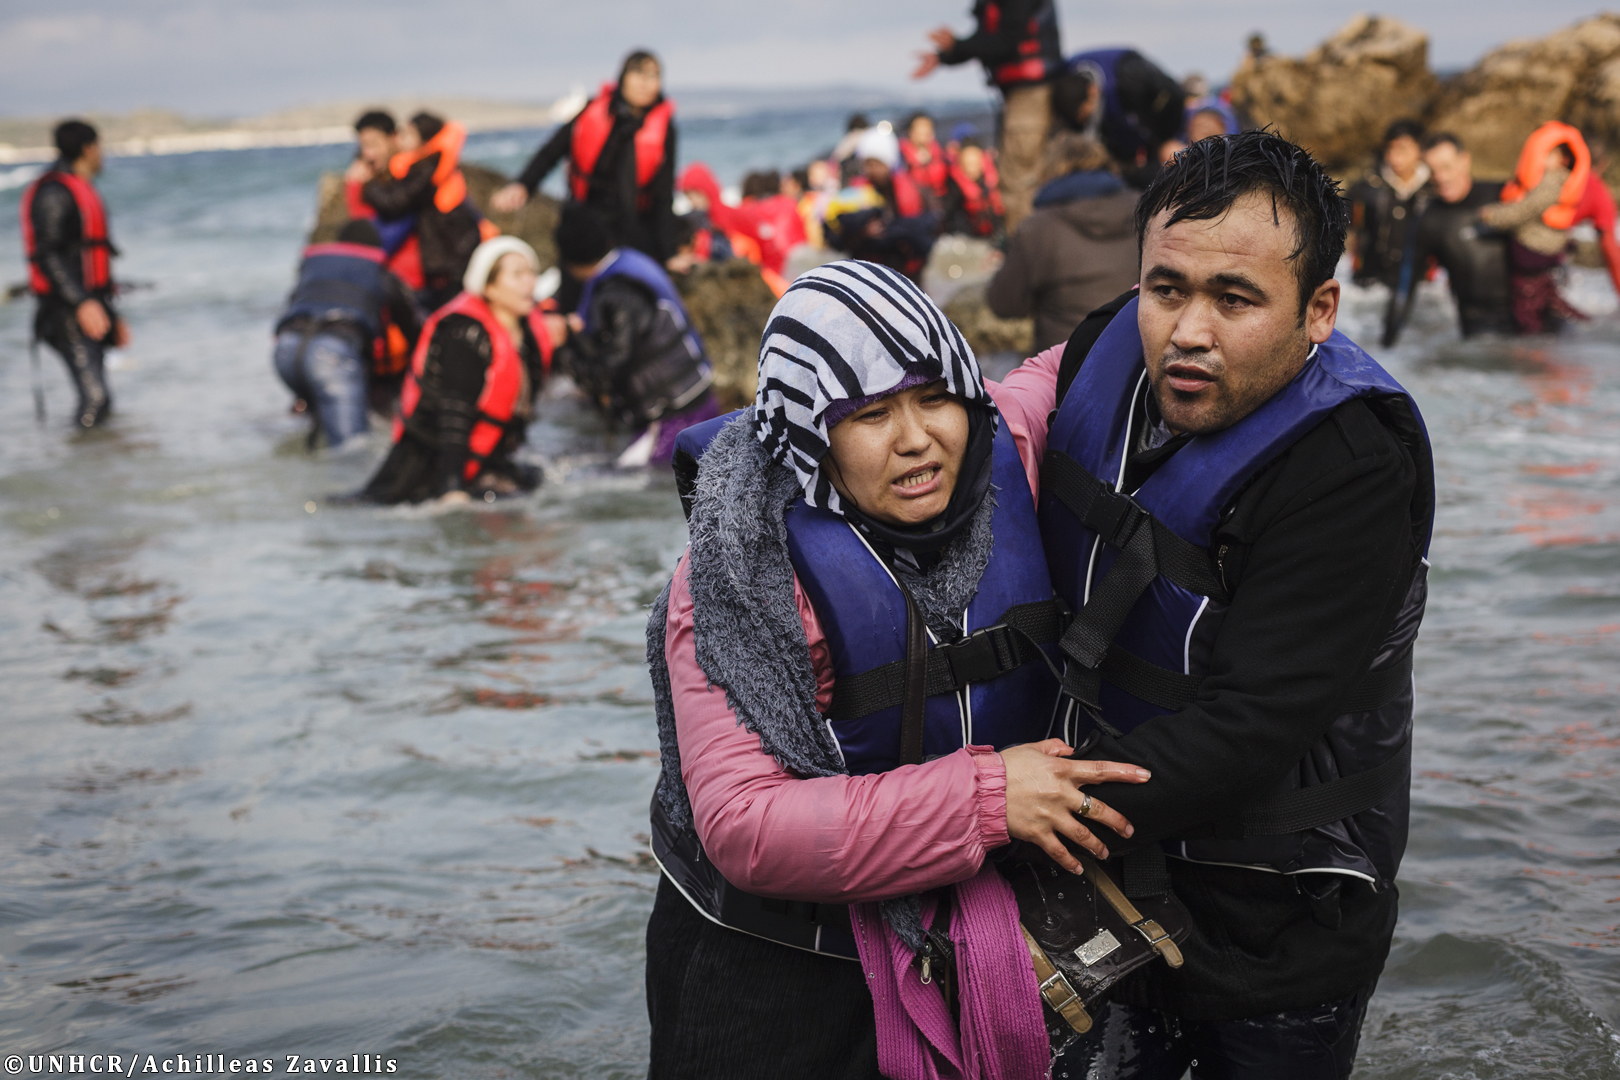 La tragedia della Manica evidenza l’immigrazione come un problema europeo e non solo italiano